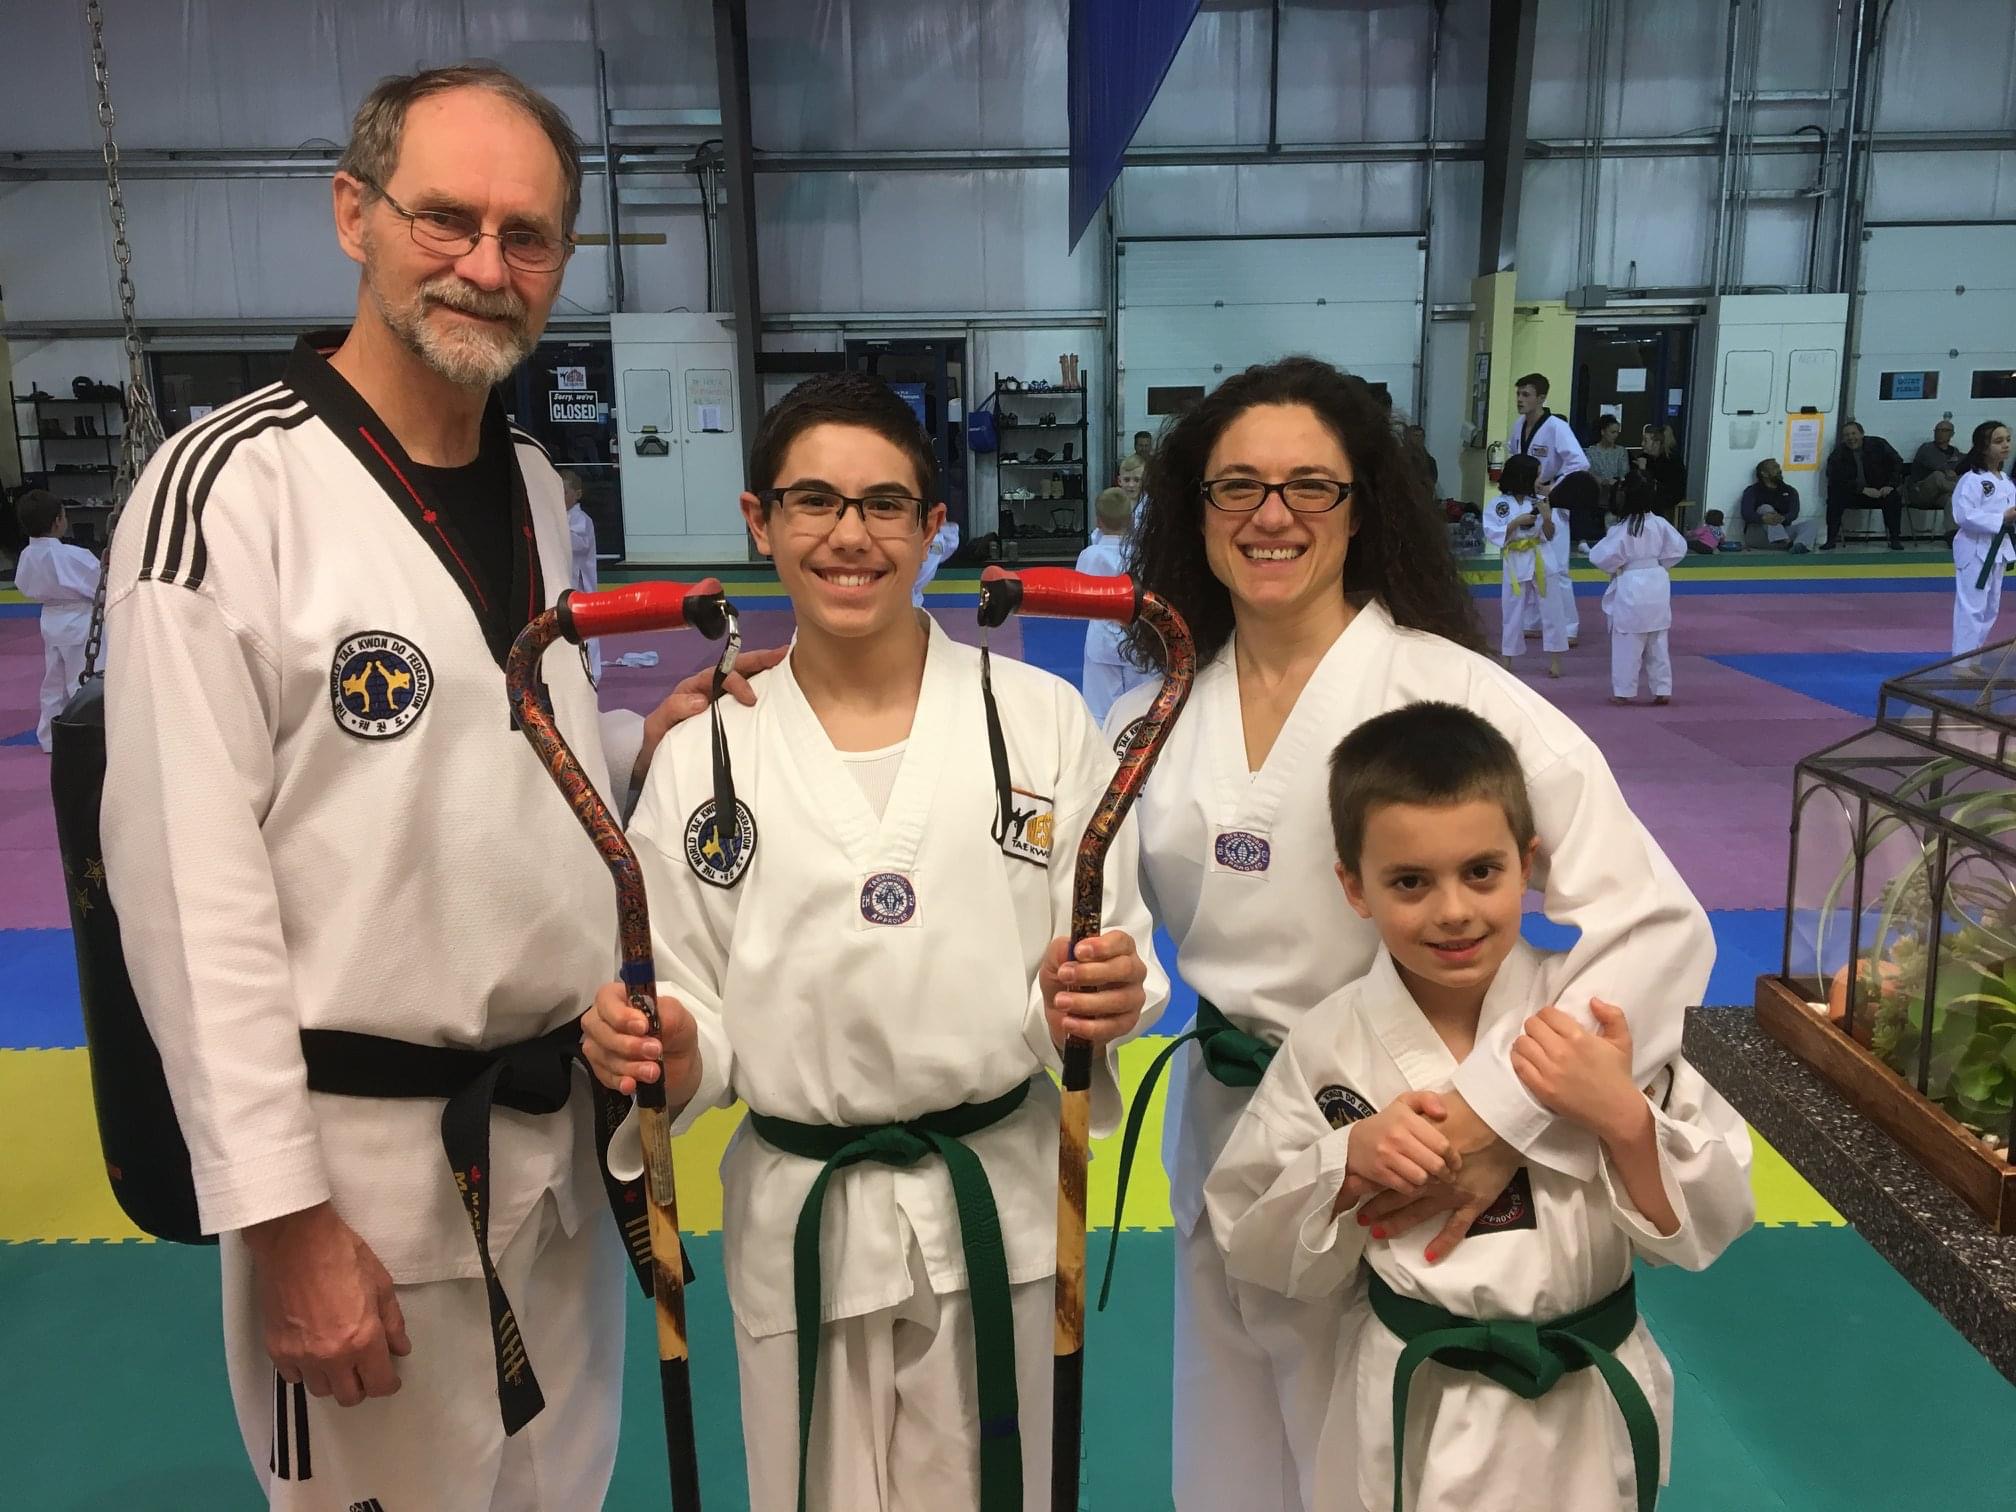 Micheal and his students at Ju Jitsu, wearing white robes